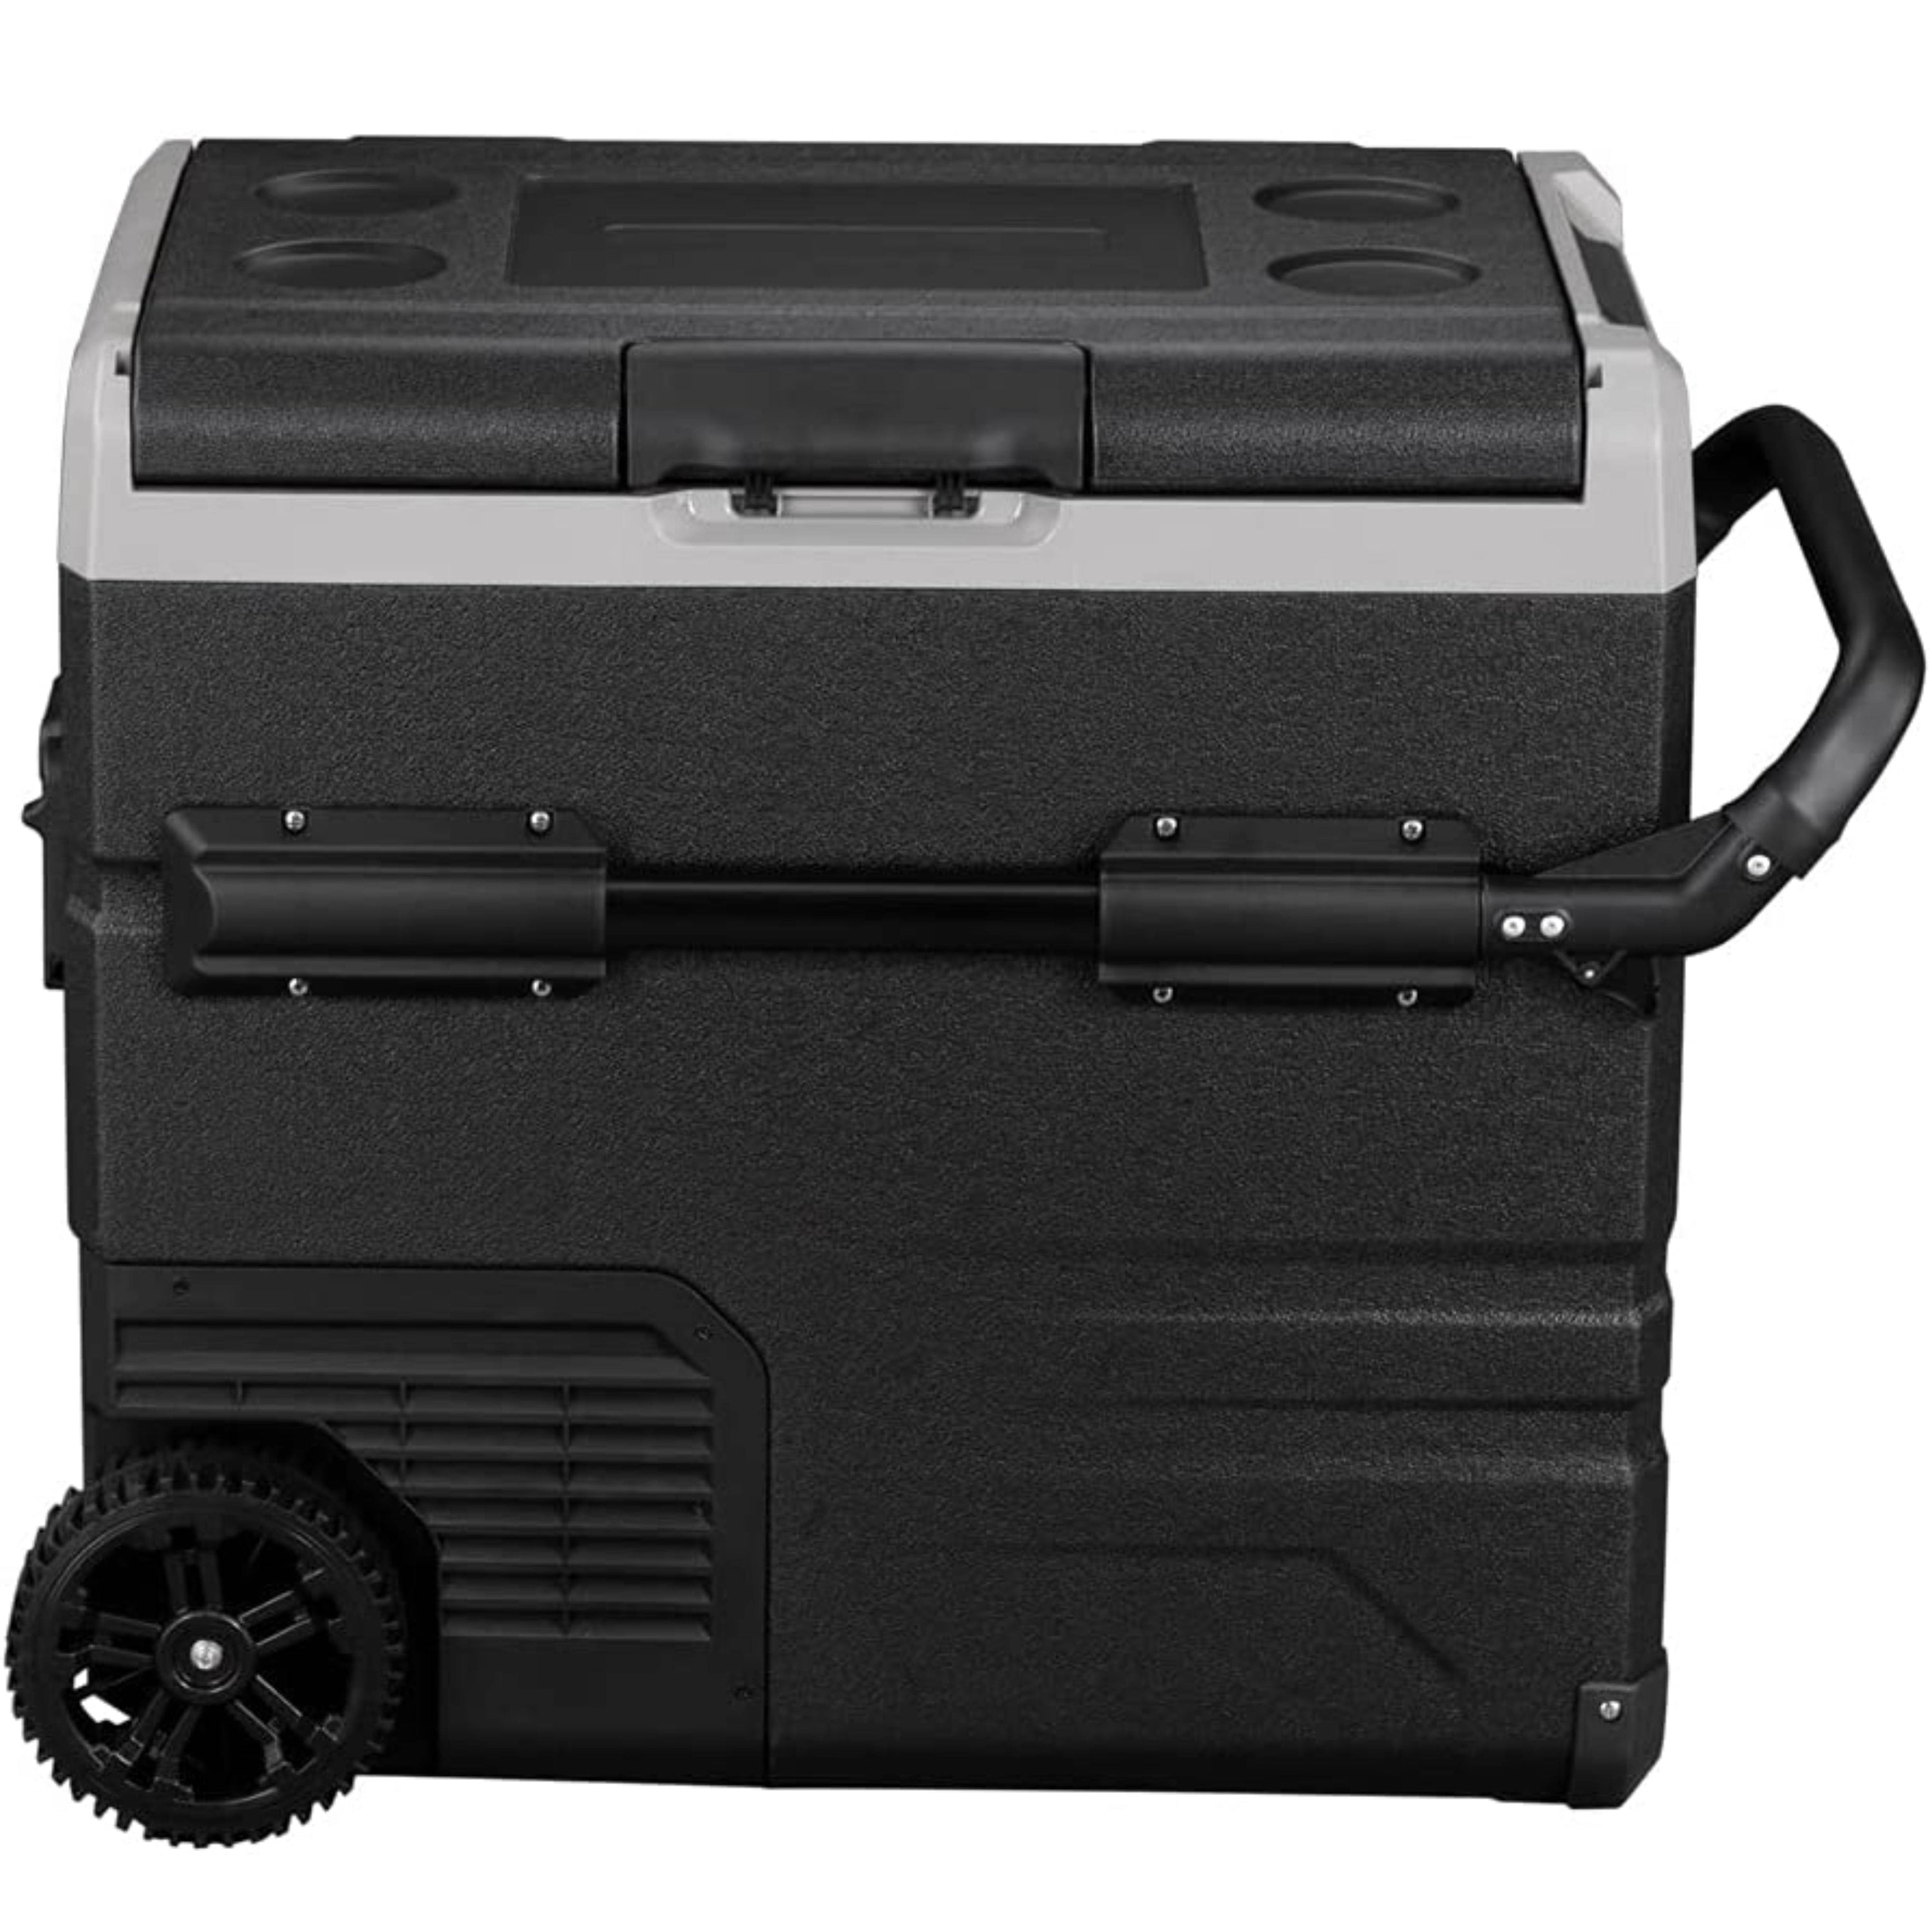 Alpicool TW45 Portable Refrigerator Dual Temperature India